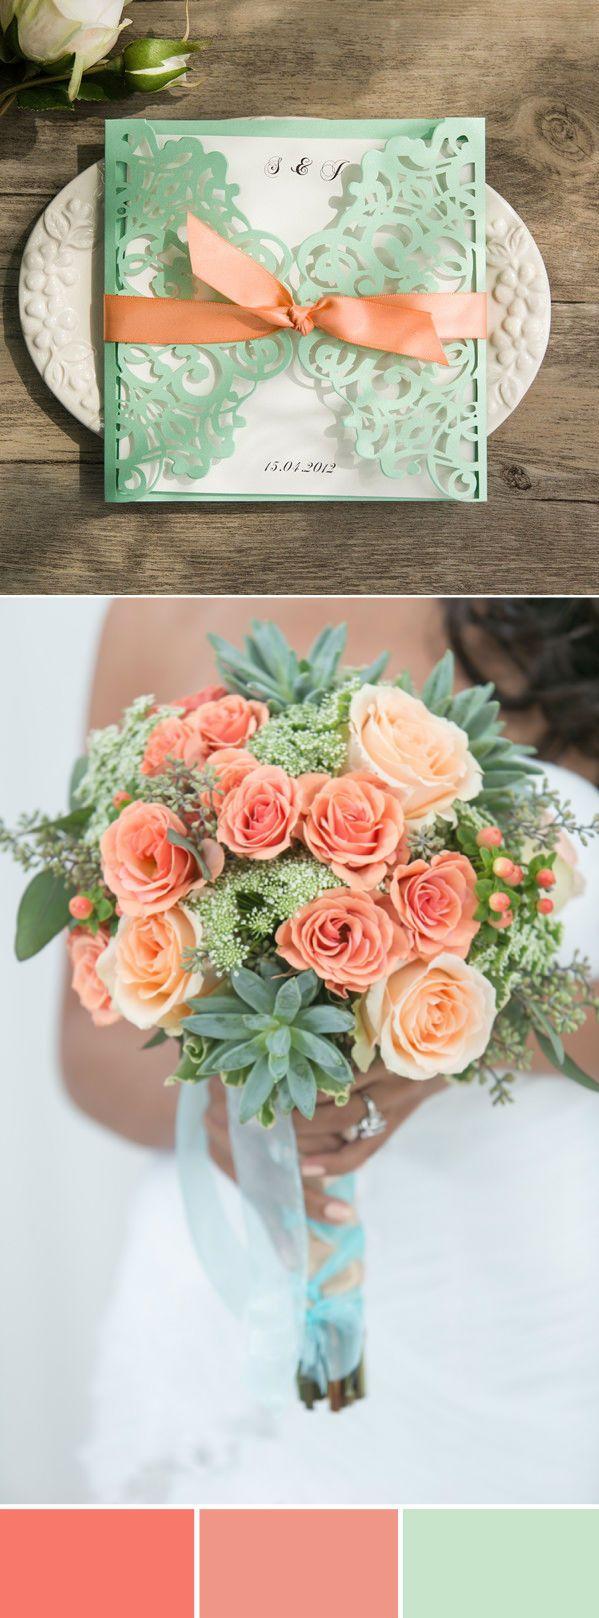 زفاف - Wonderful Mint Wedding Color Ideas With Elegant Wedding Invites